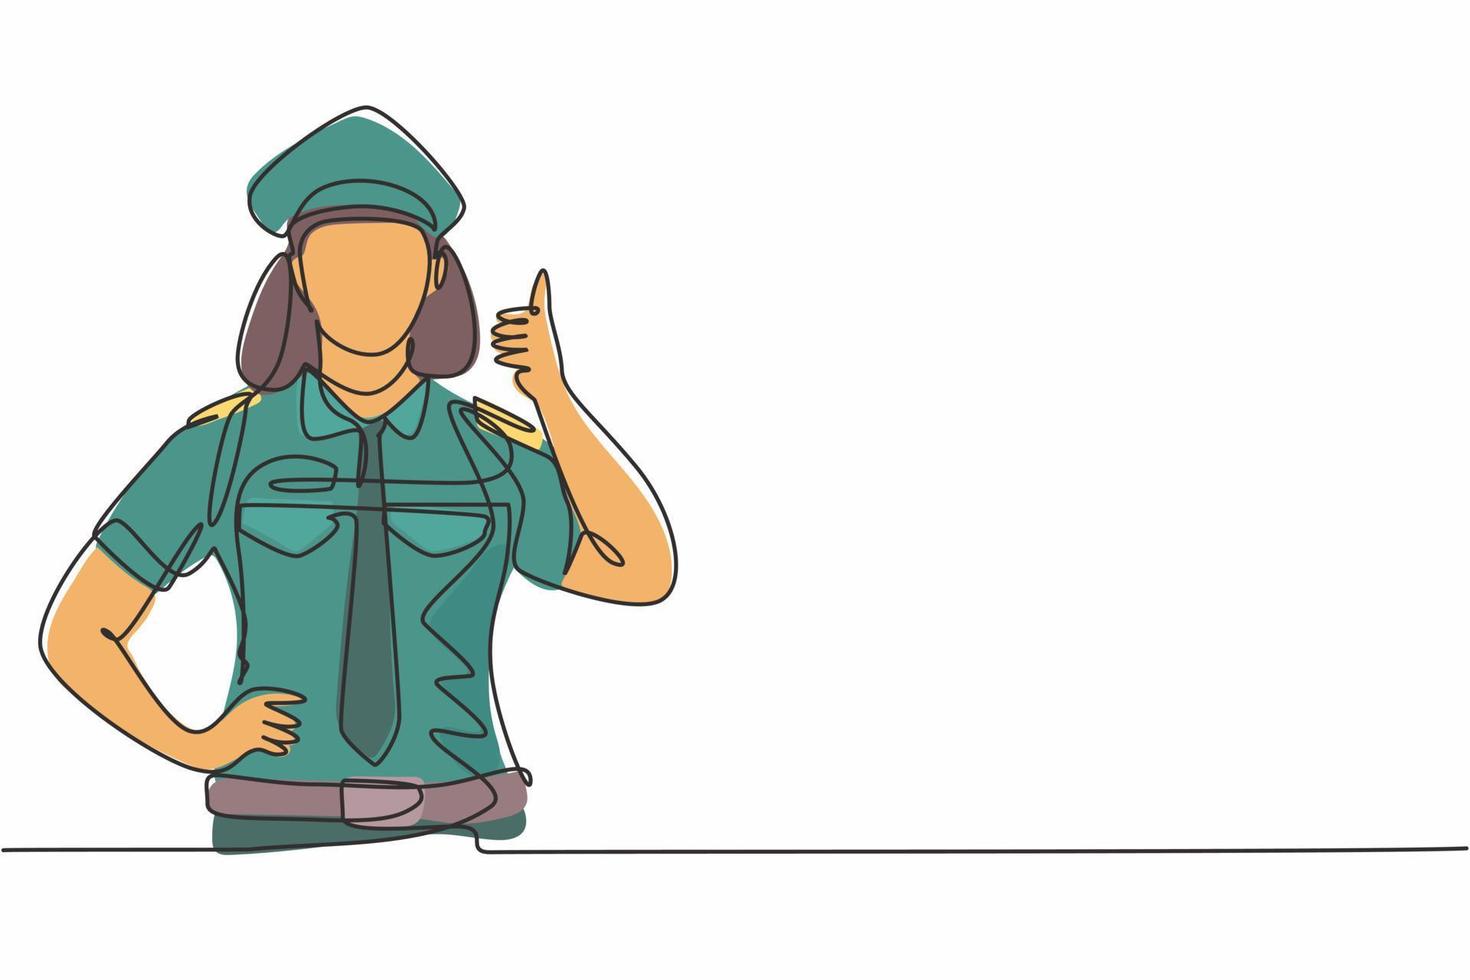 desenho de linha única de uma mulher piloto com um gesto de polegar para cima e de uniforme completo, pronta para voar com a tripulação de cabine no avião no aeroporto. ilustração em vetor gráfico desenho linha contínua